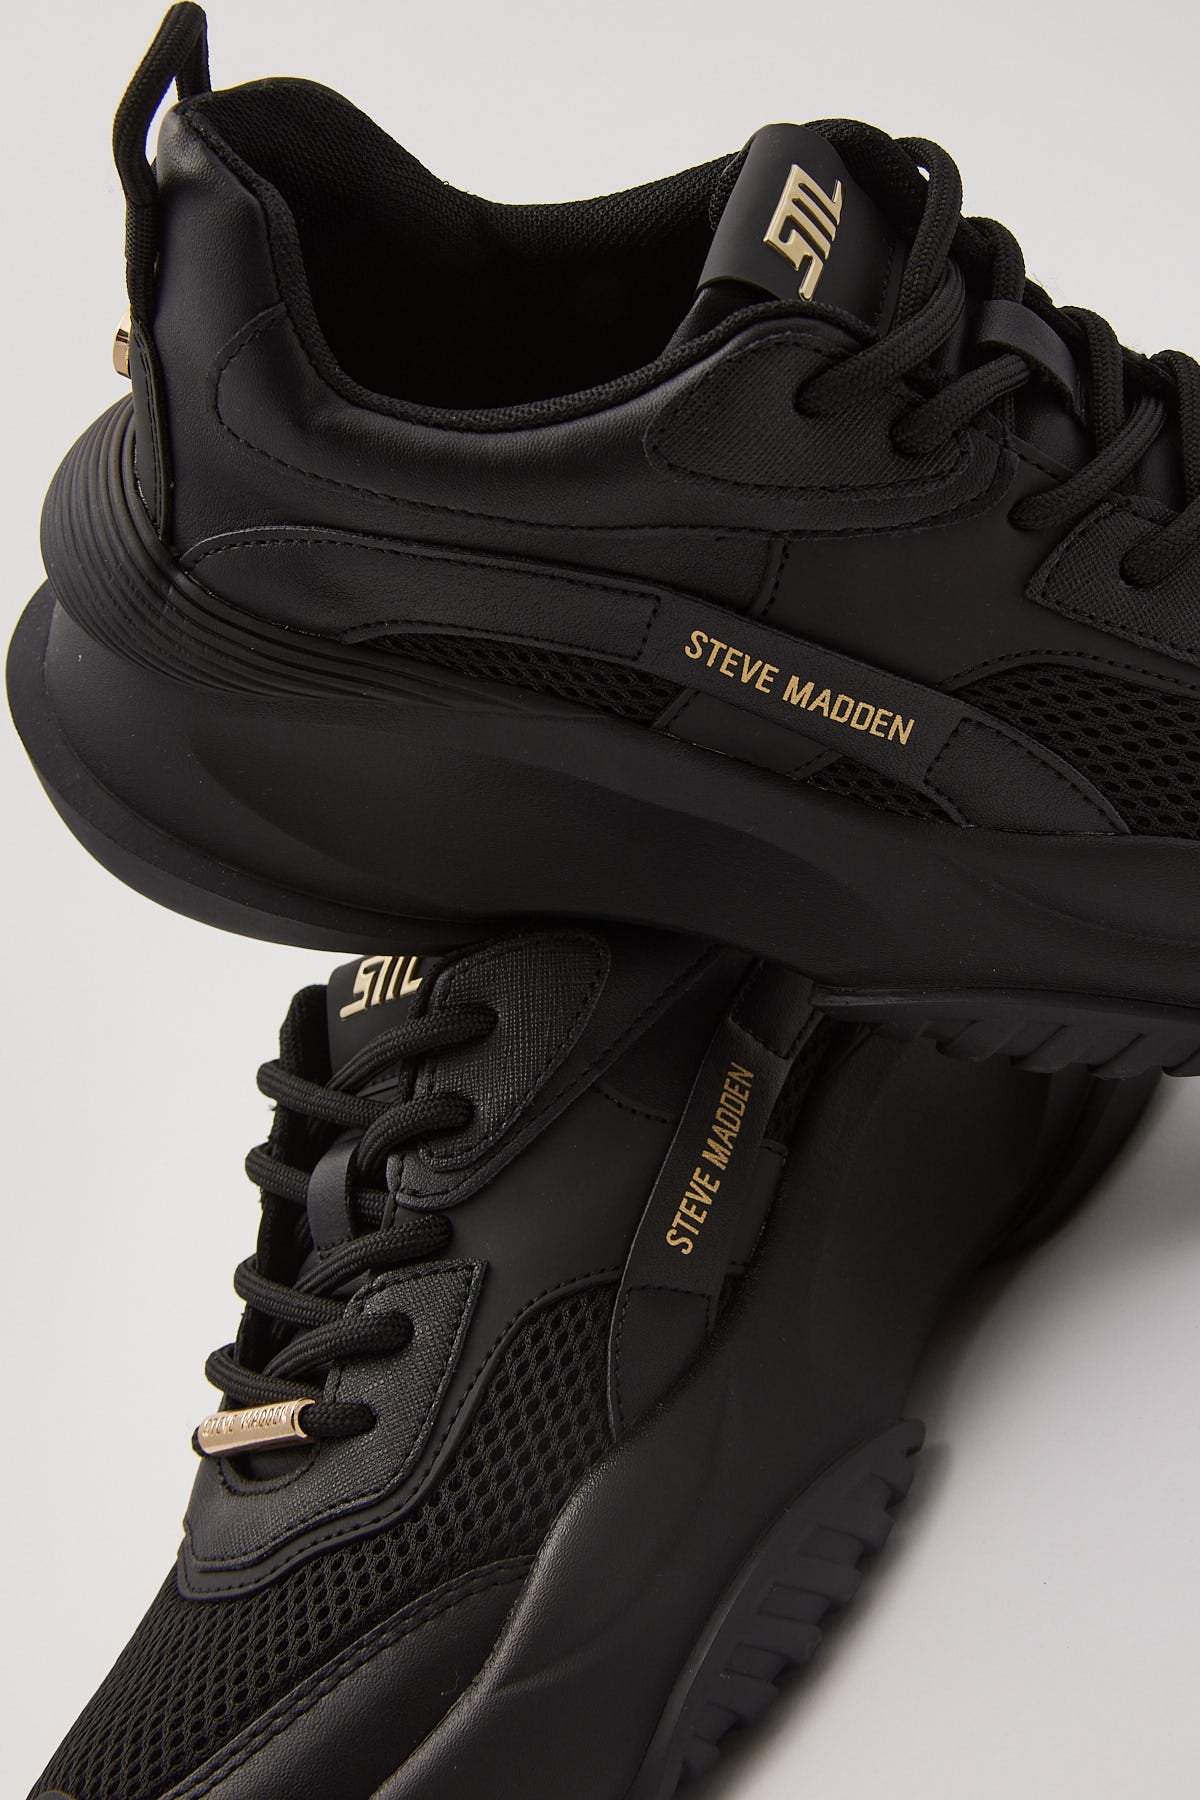 Steve Madden Belissimo Sneaker Black Gold